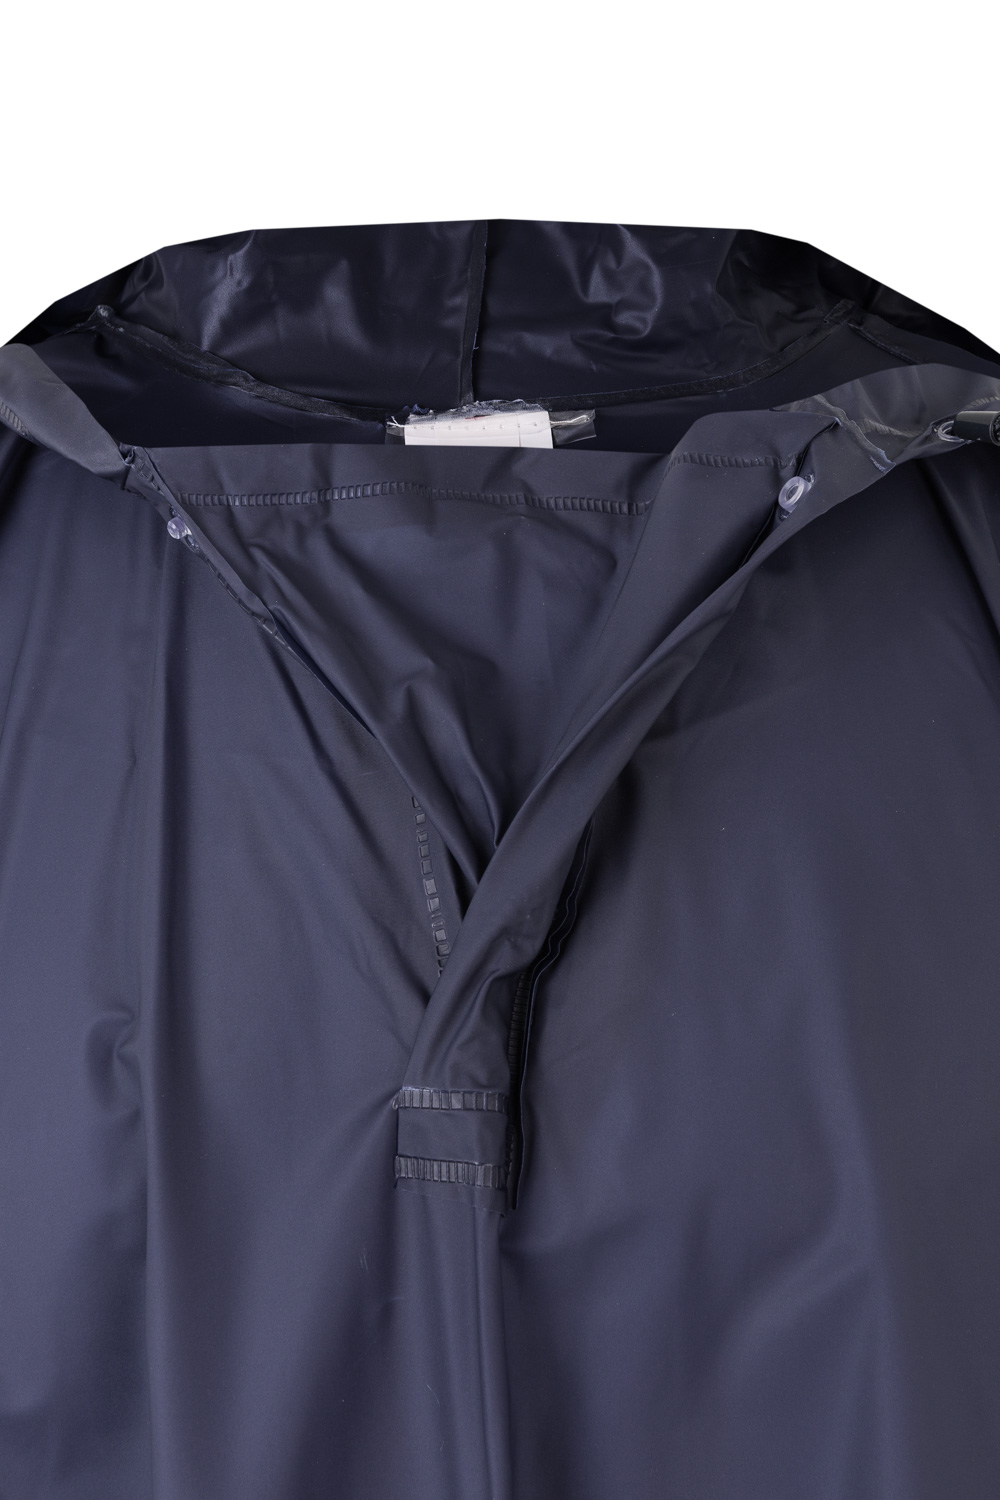 Poncho lluvia con capucha - Bordariz - Personalización y Uniformidad Laboral